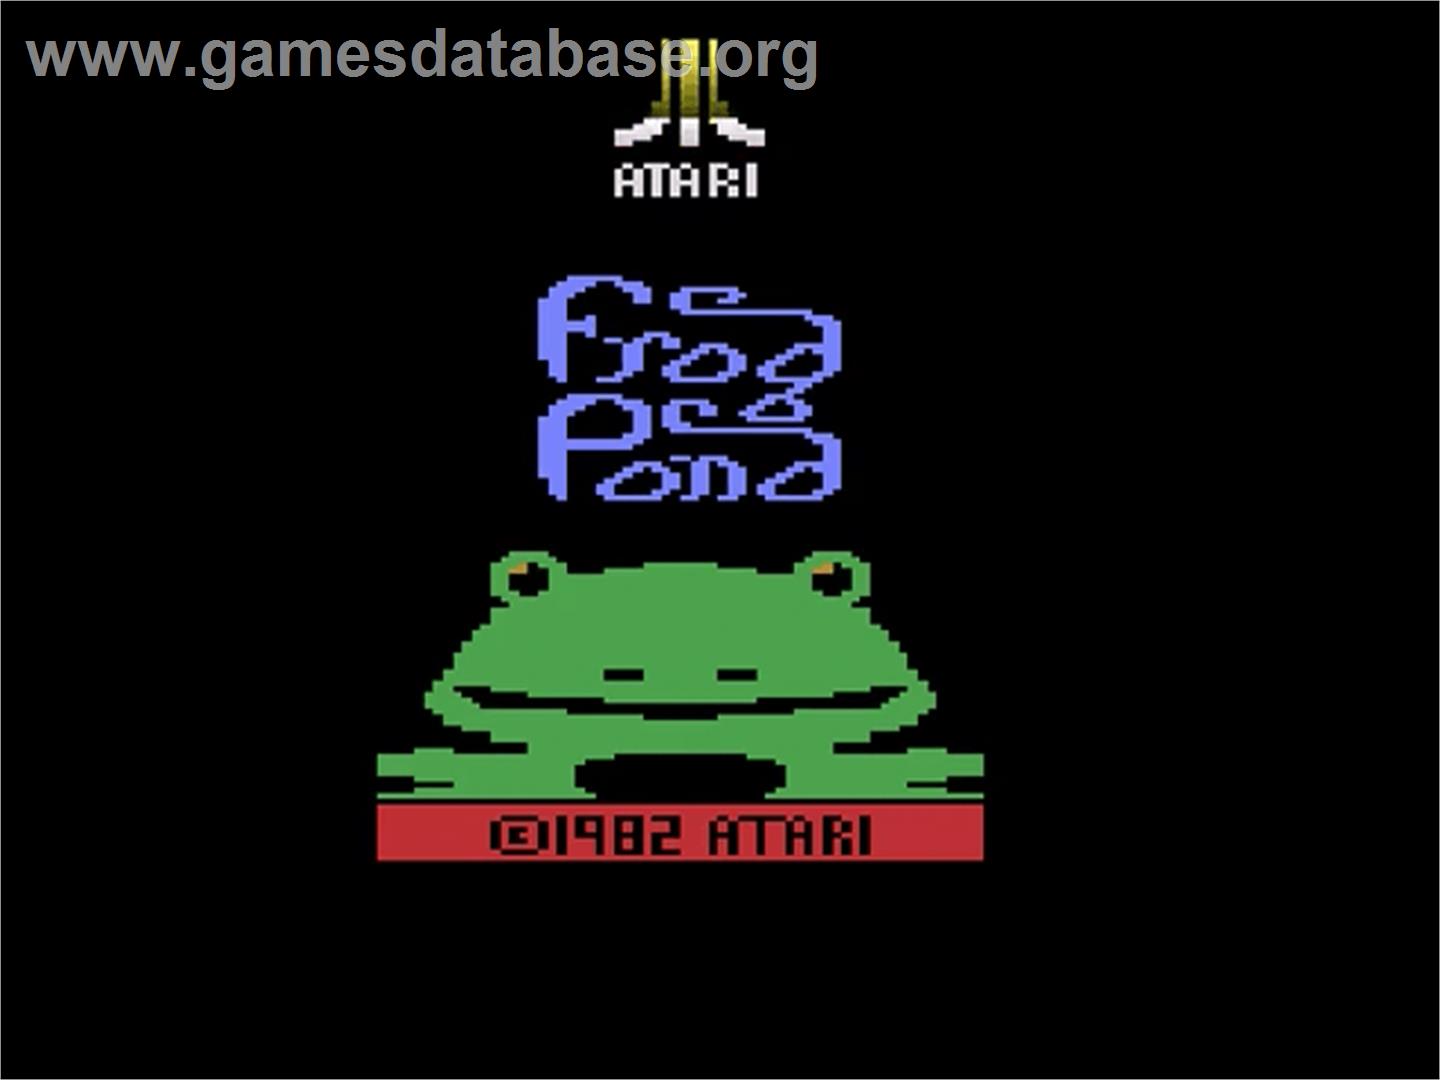 Frog Bog - Atari 2600 - Artwork - Title Screen